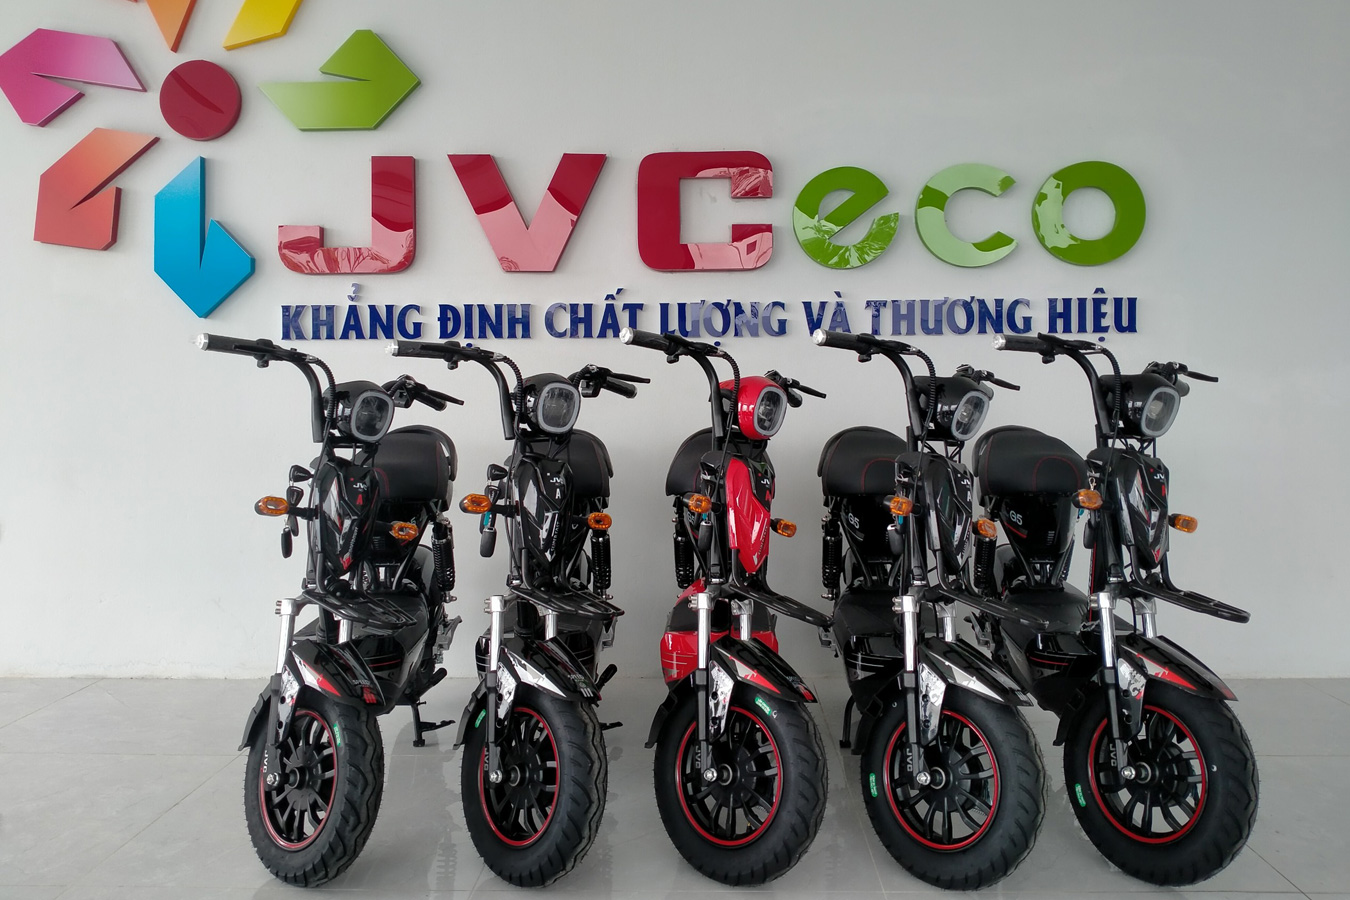 JVC Eco khẳng định chất lượng và thương hiệu